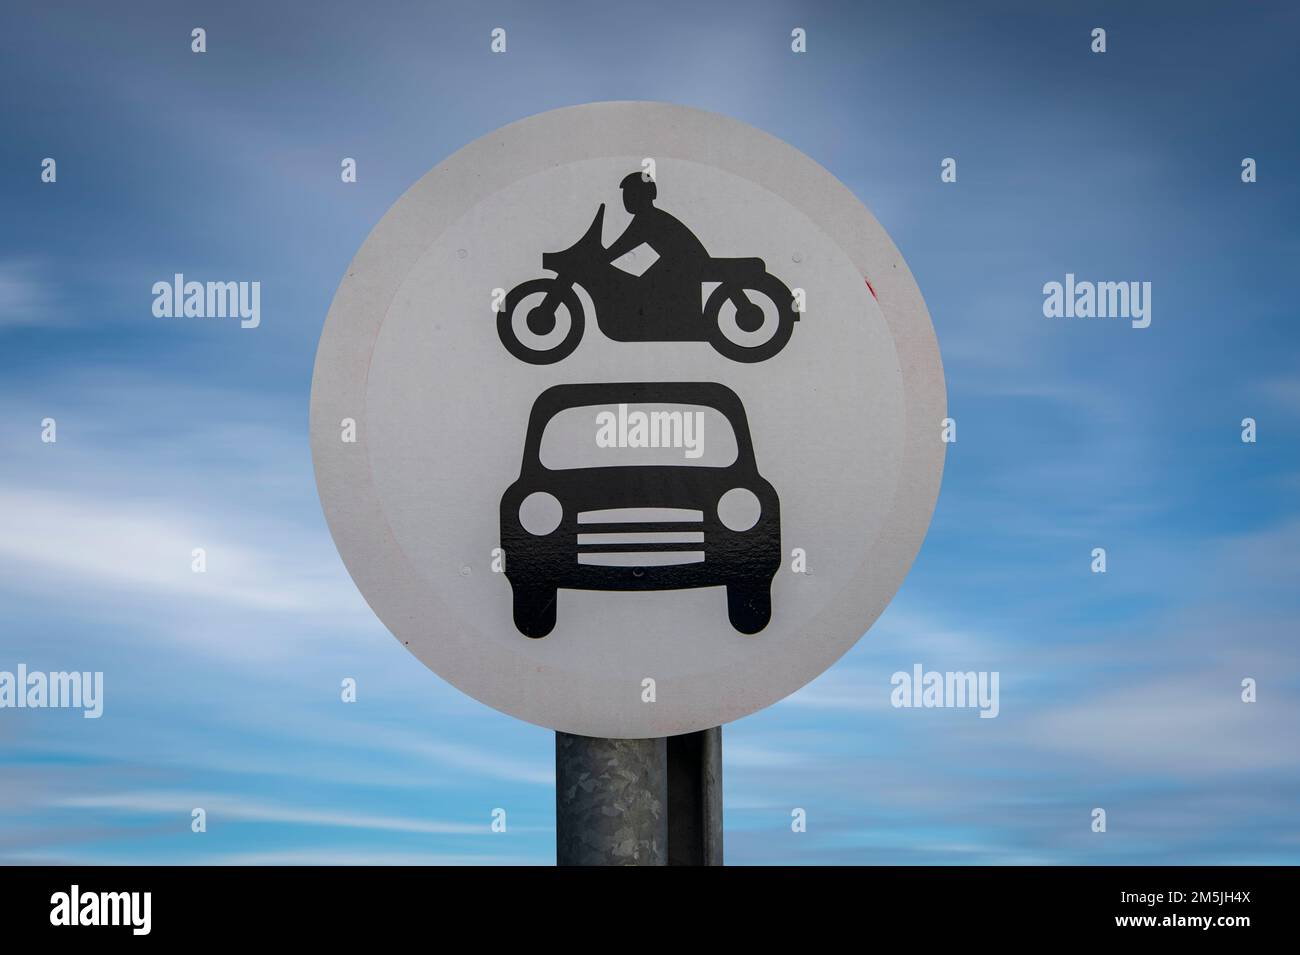 Signe de route décoloré, véhicules automobiles interdits avec une moto sur le dessus de la voiture sur un fond bleu ciel Banque D'Images